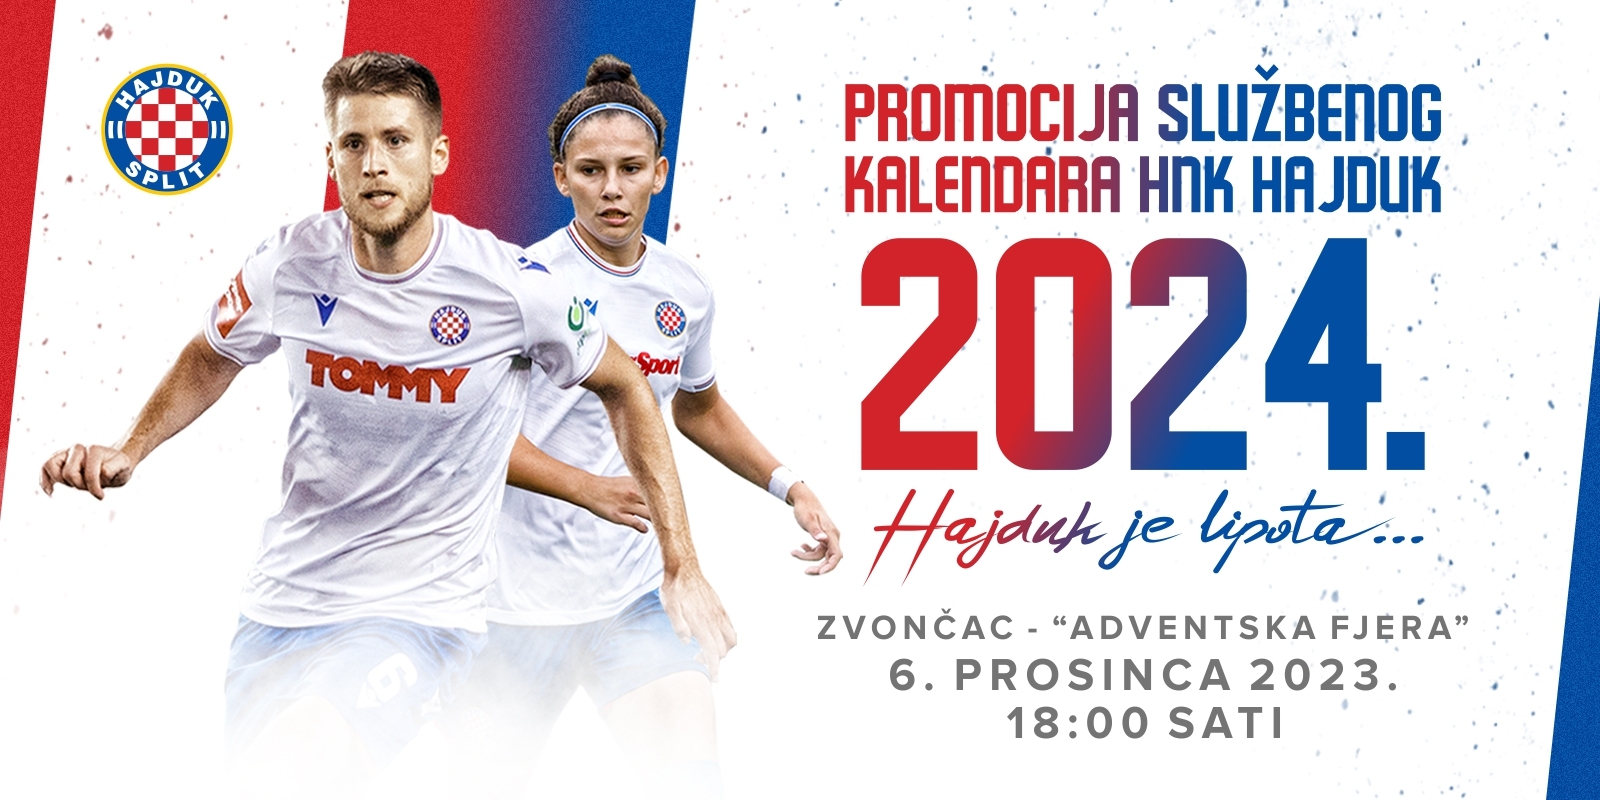 Hajduk je lipota: Predstavljamo službeni kalendar HNK Hajduk za 2024. godinu